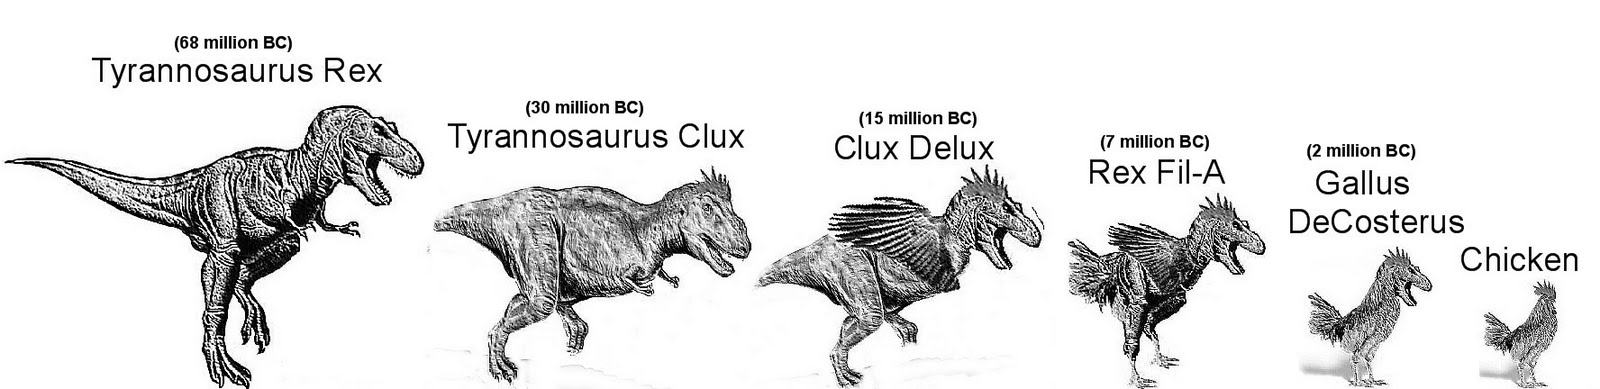 Chicken_Tyrannosaurus_Rex_Evolution.jpg